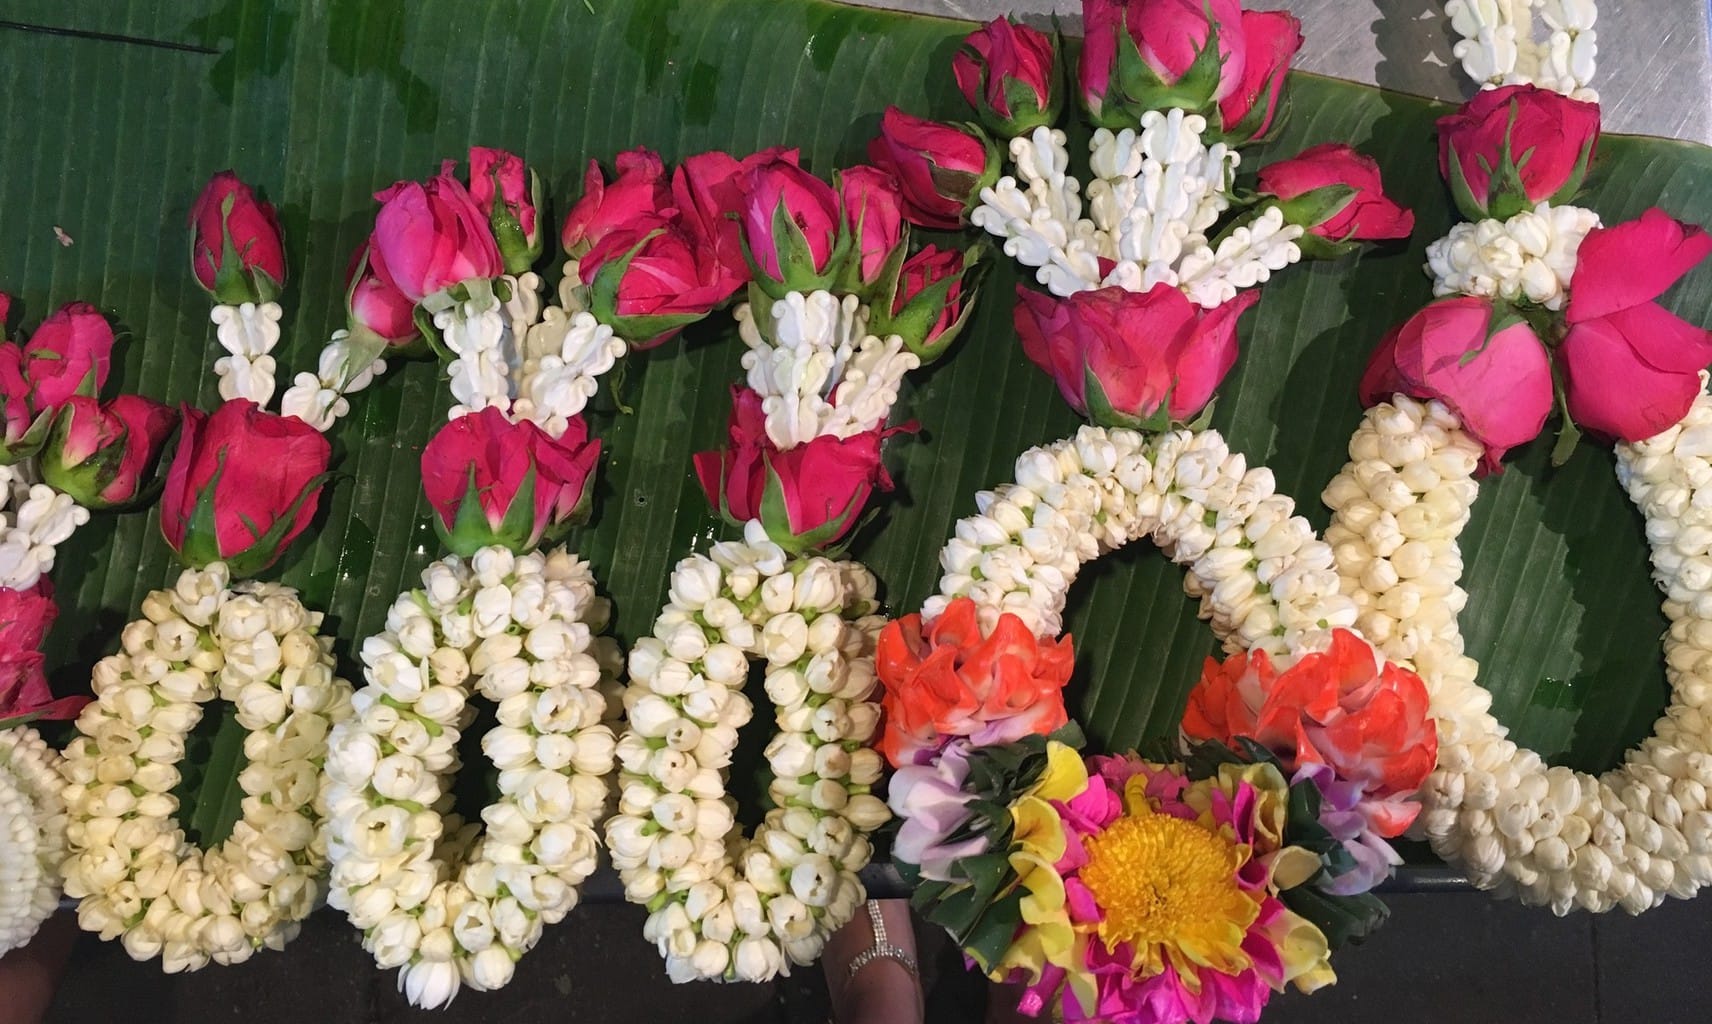 Bangkok flower market